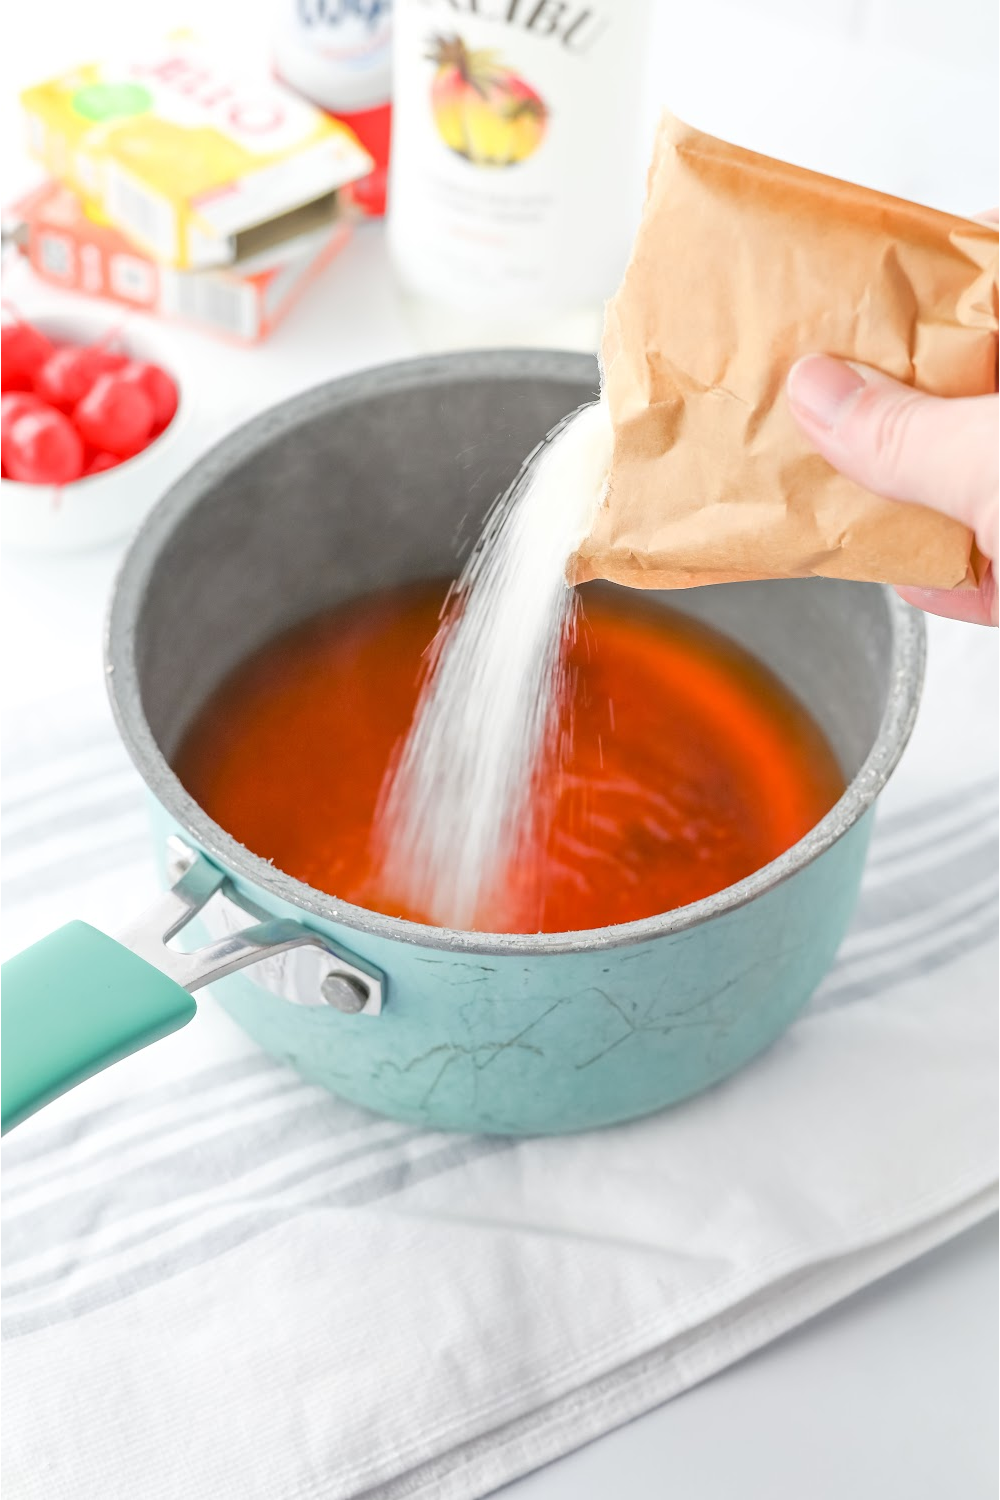 Pour jello into a sauce pan.